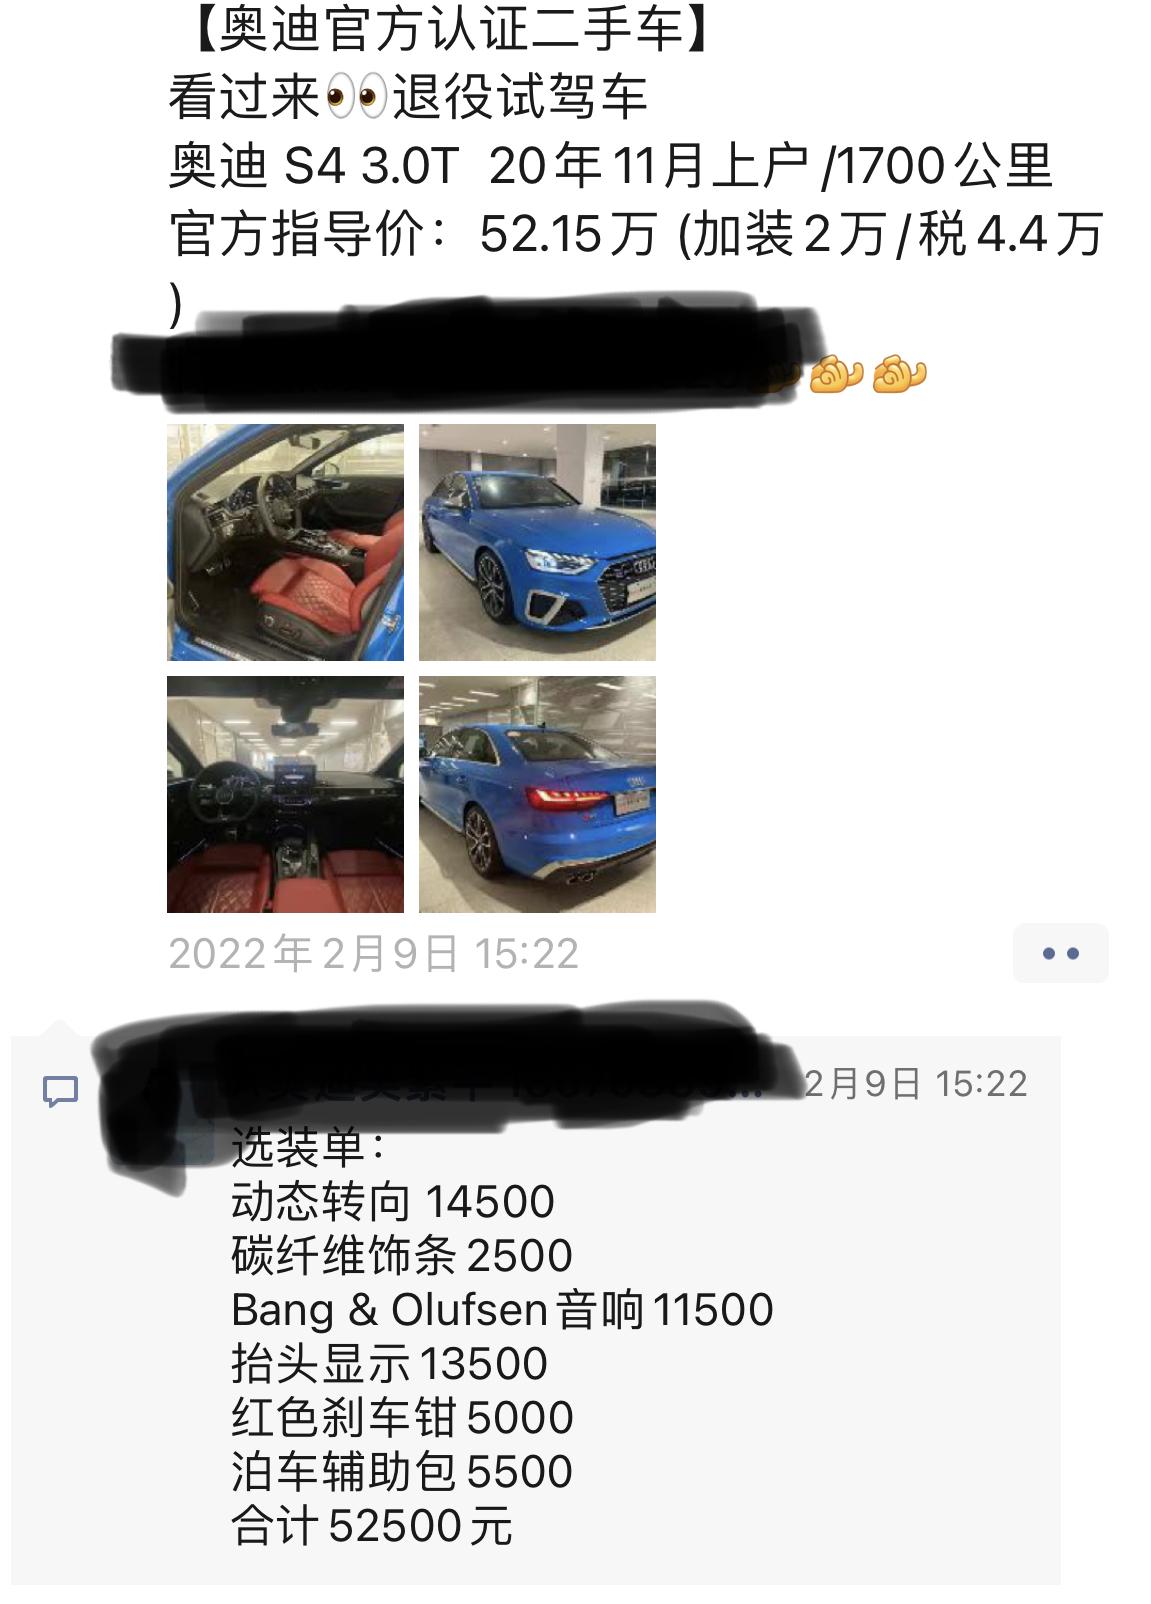 奥迪S4 个人感觉不是很喜欢二手车但不过价格有点心动，这个价格亏么？